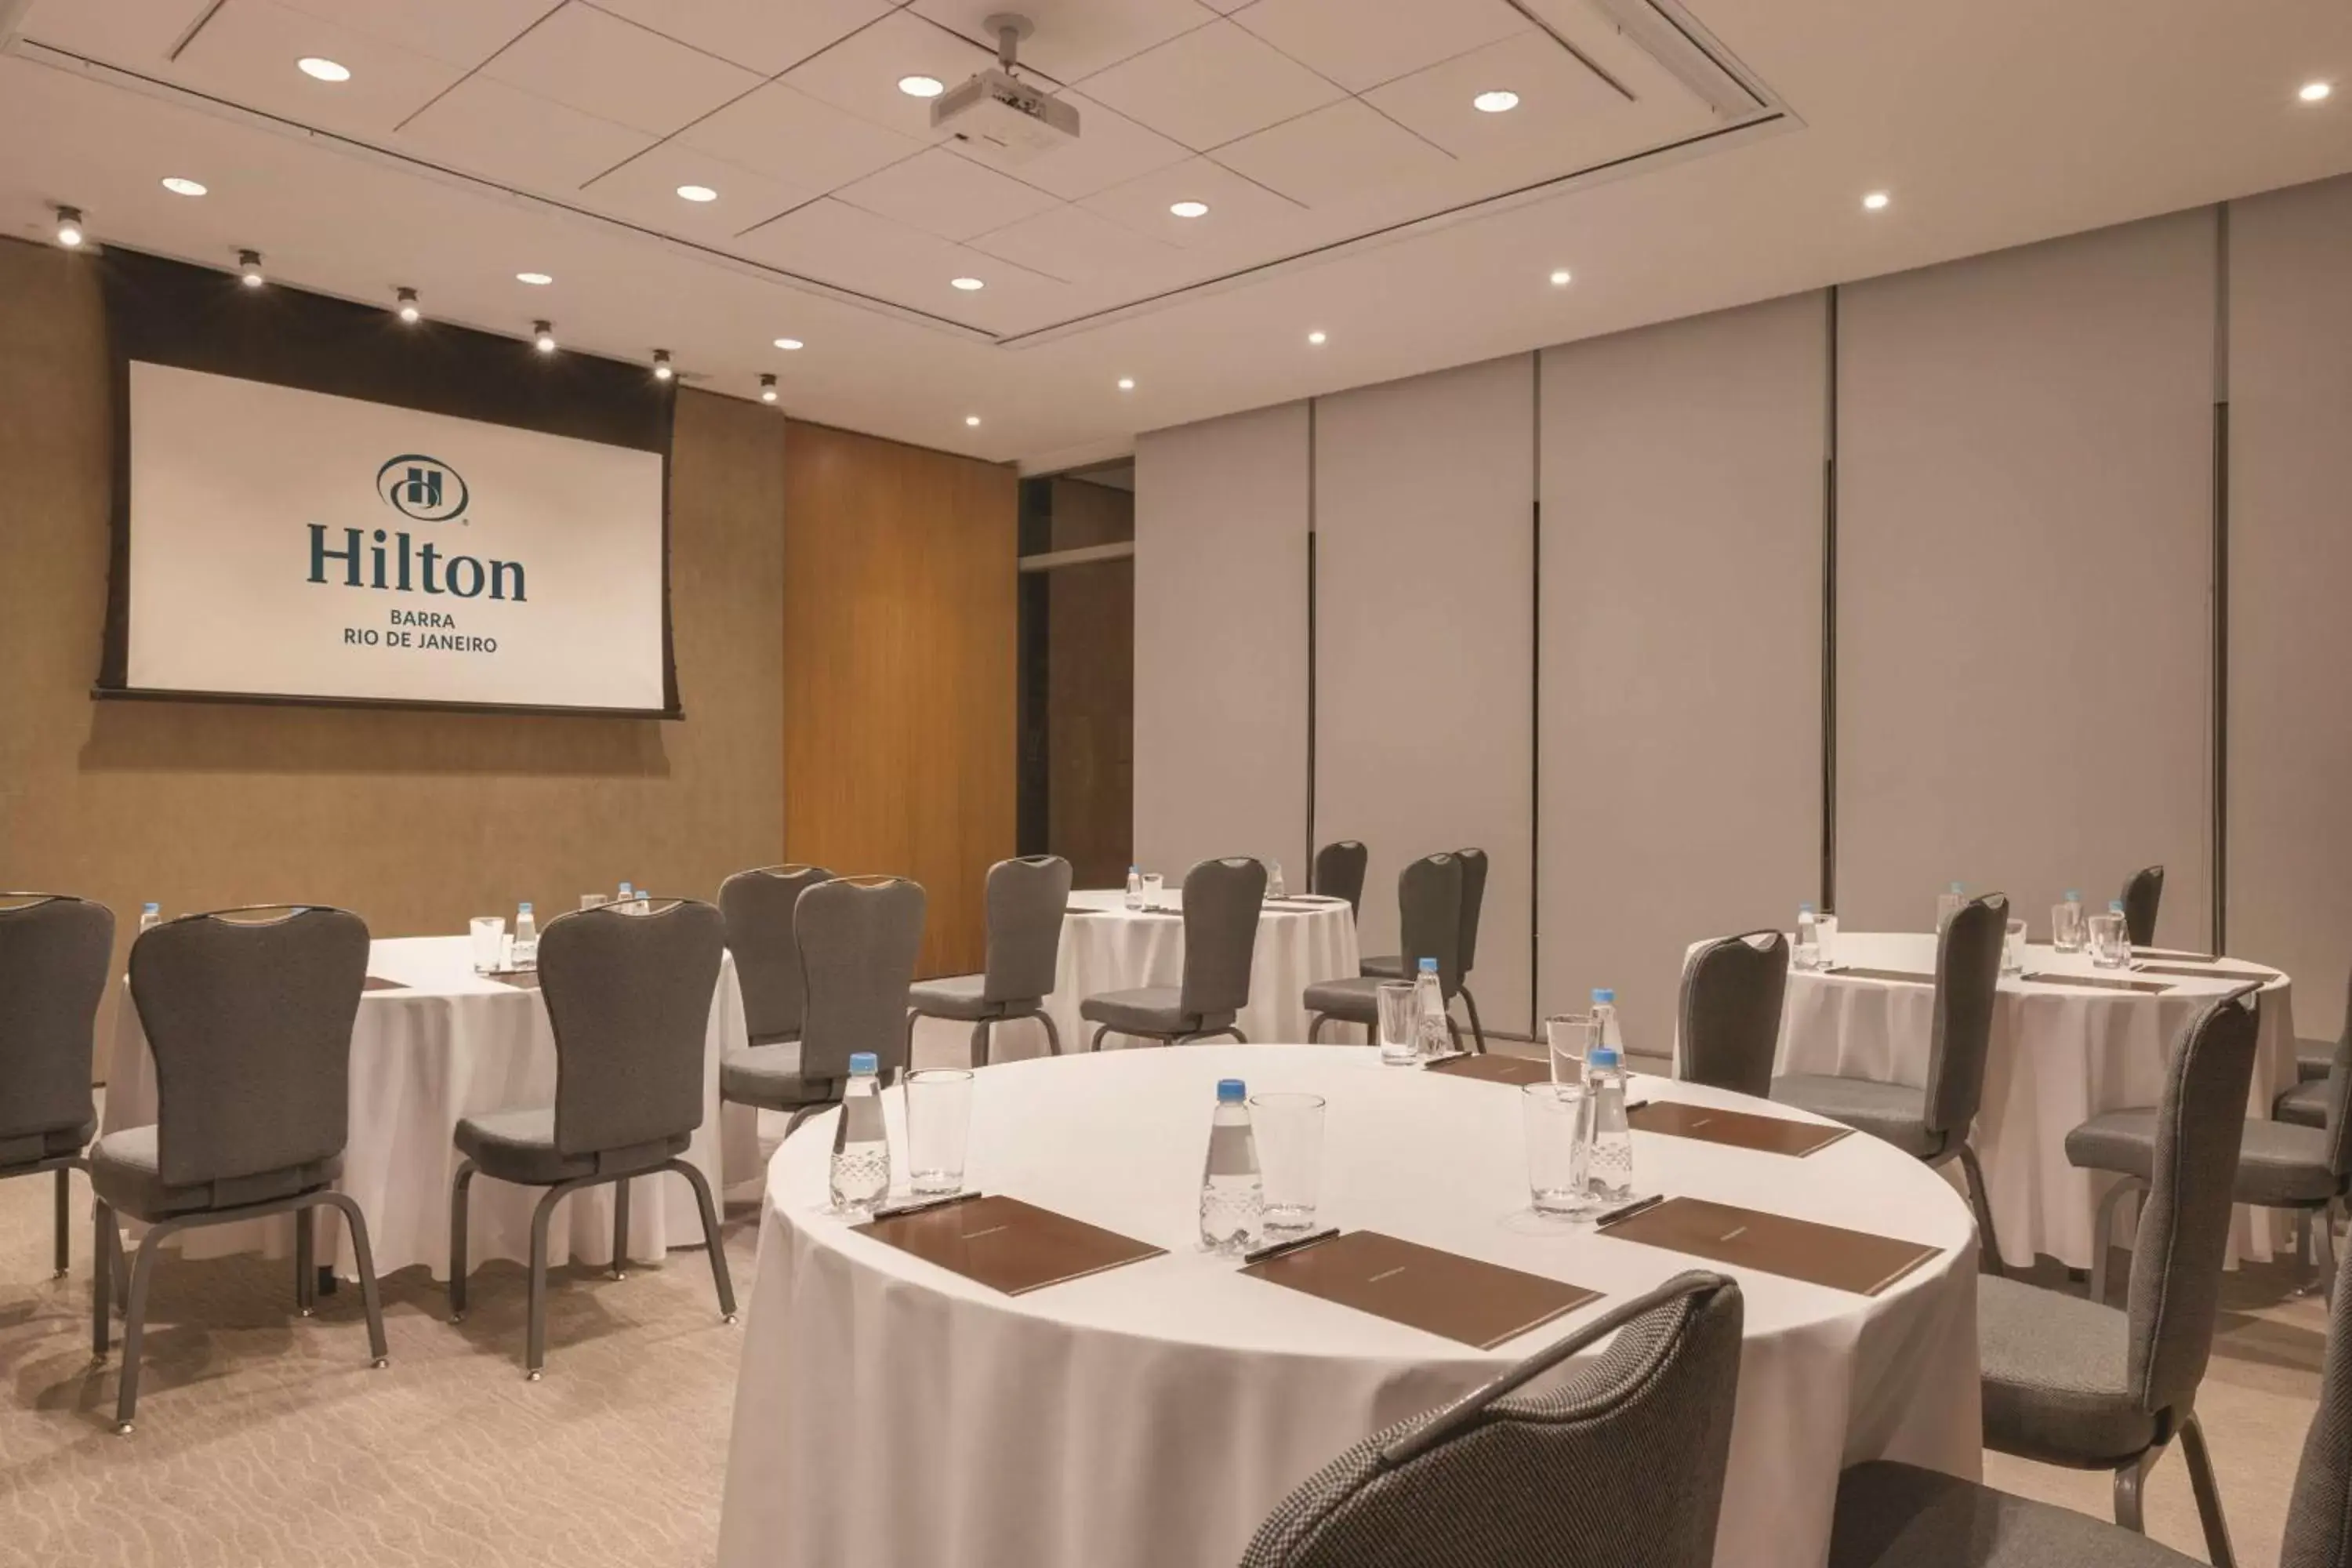 Meeting/conference room in Hilton Barra Rio de Janeiro